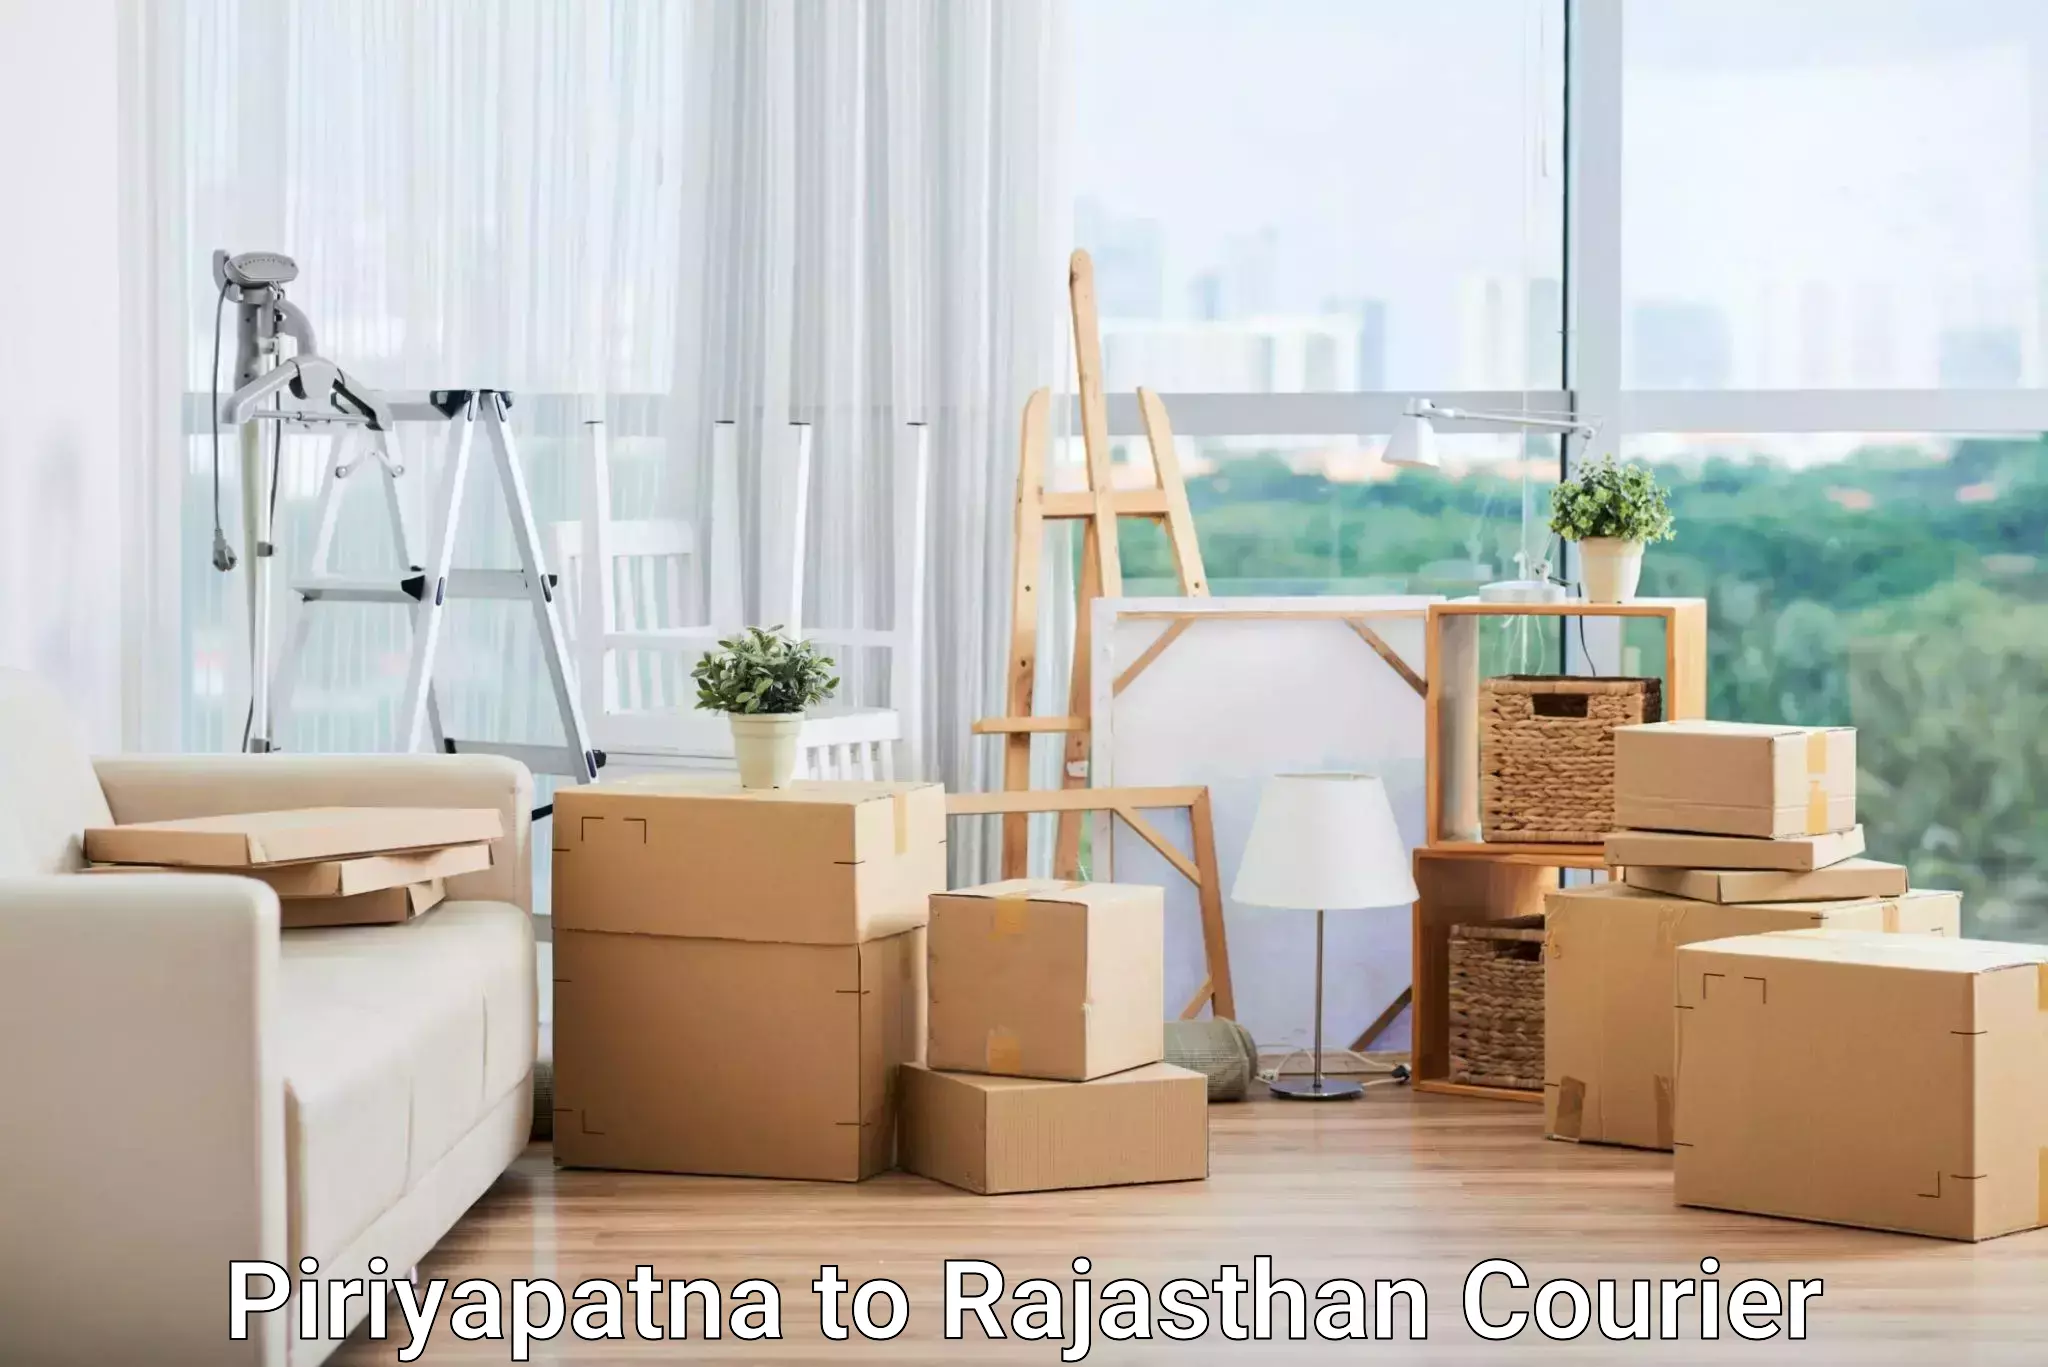 Urban courier service Piriyapatna to Shahpura Jaipur